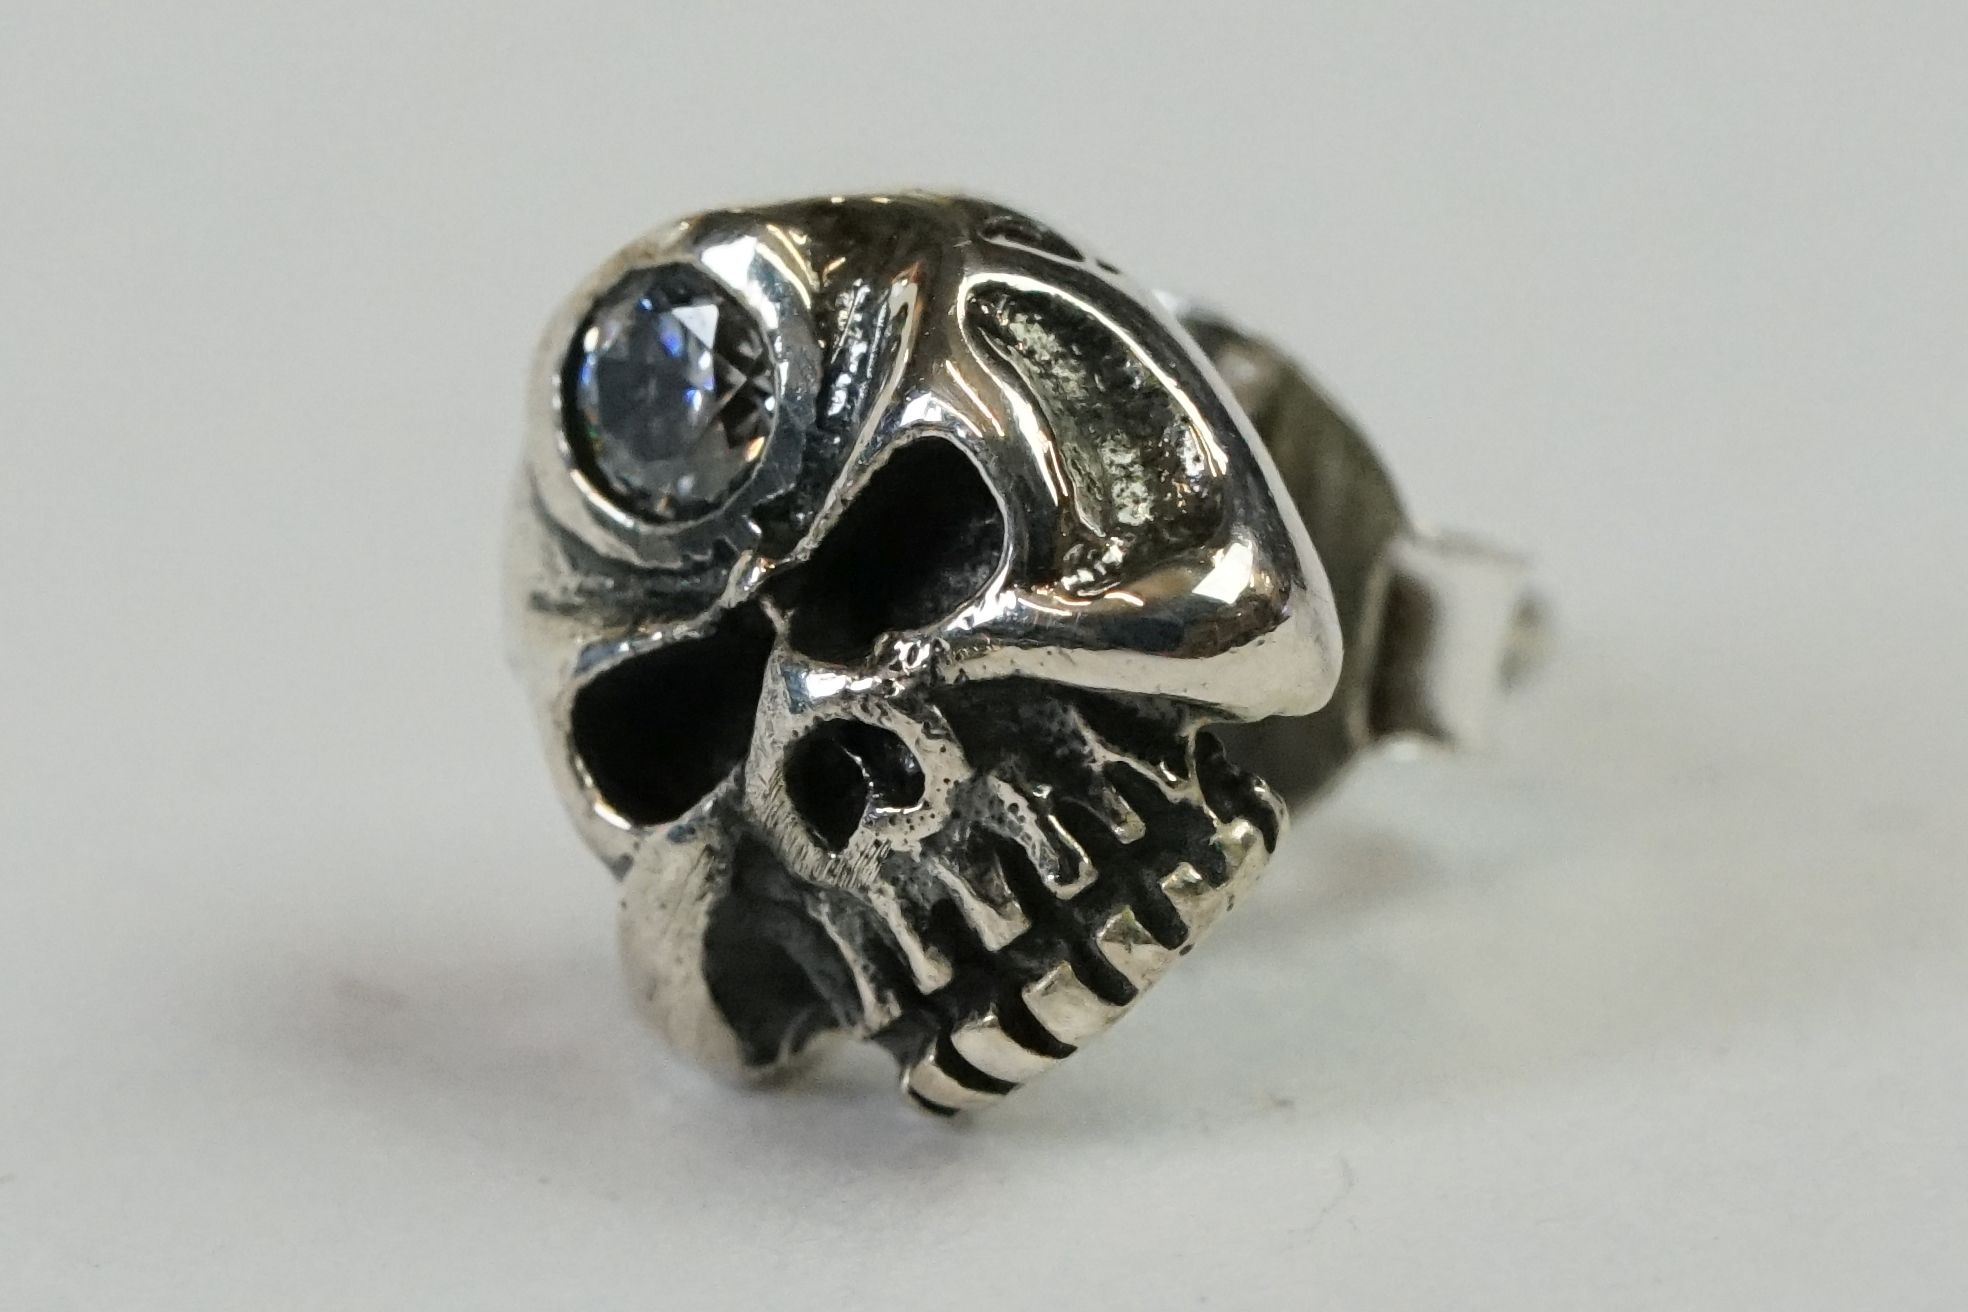 Pair of Silver Skull Headed Stud Earrings - Image 3 of 7